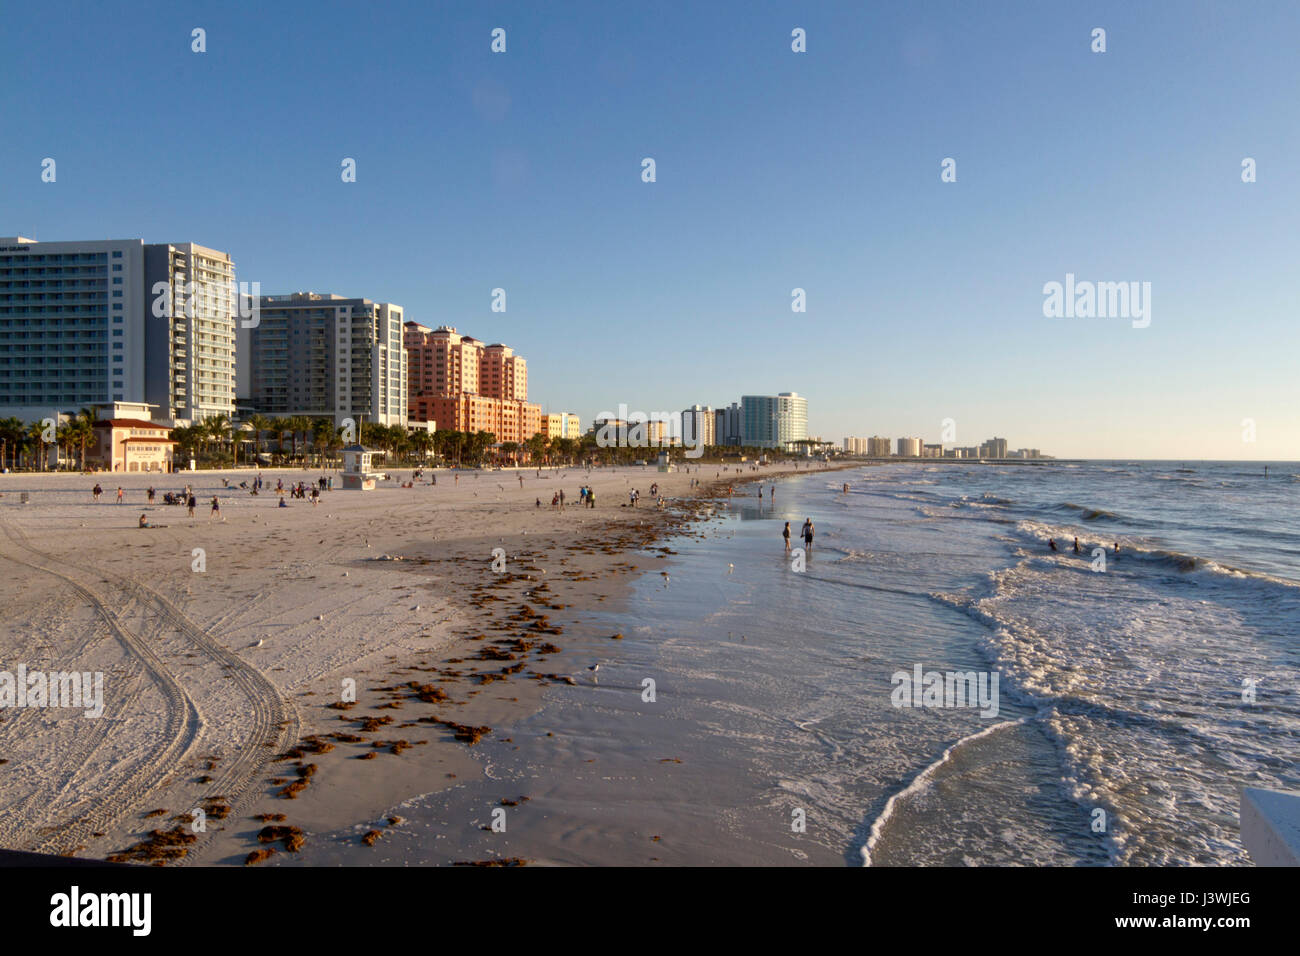 Clearwater, Florida - 24. Januar 2017: Am späten Nachmittag bei klarem Wasser Strand gesäumt von bunten Gebäuden und Wellen Washig auf Sand und fernen p Stockfoto